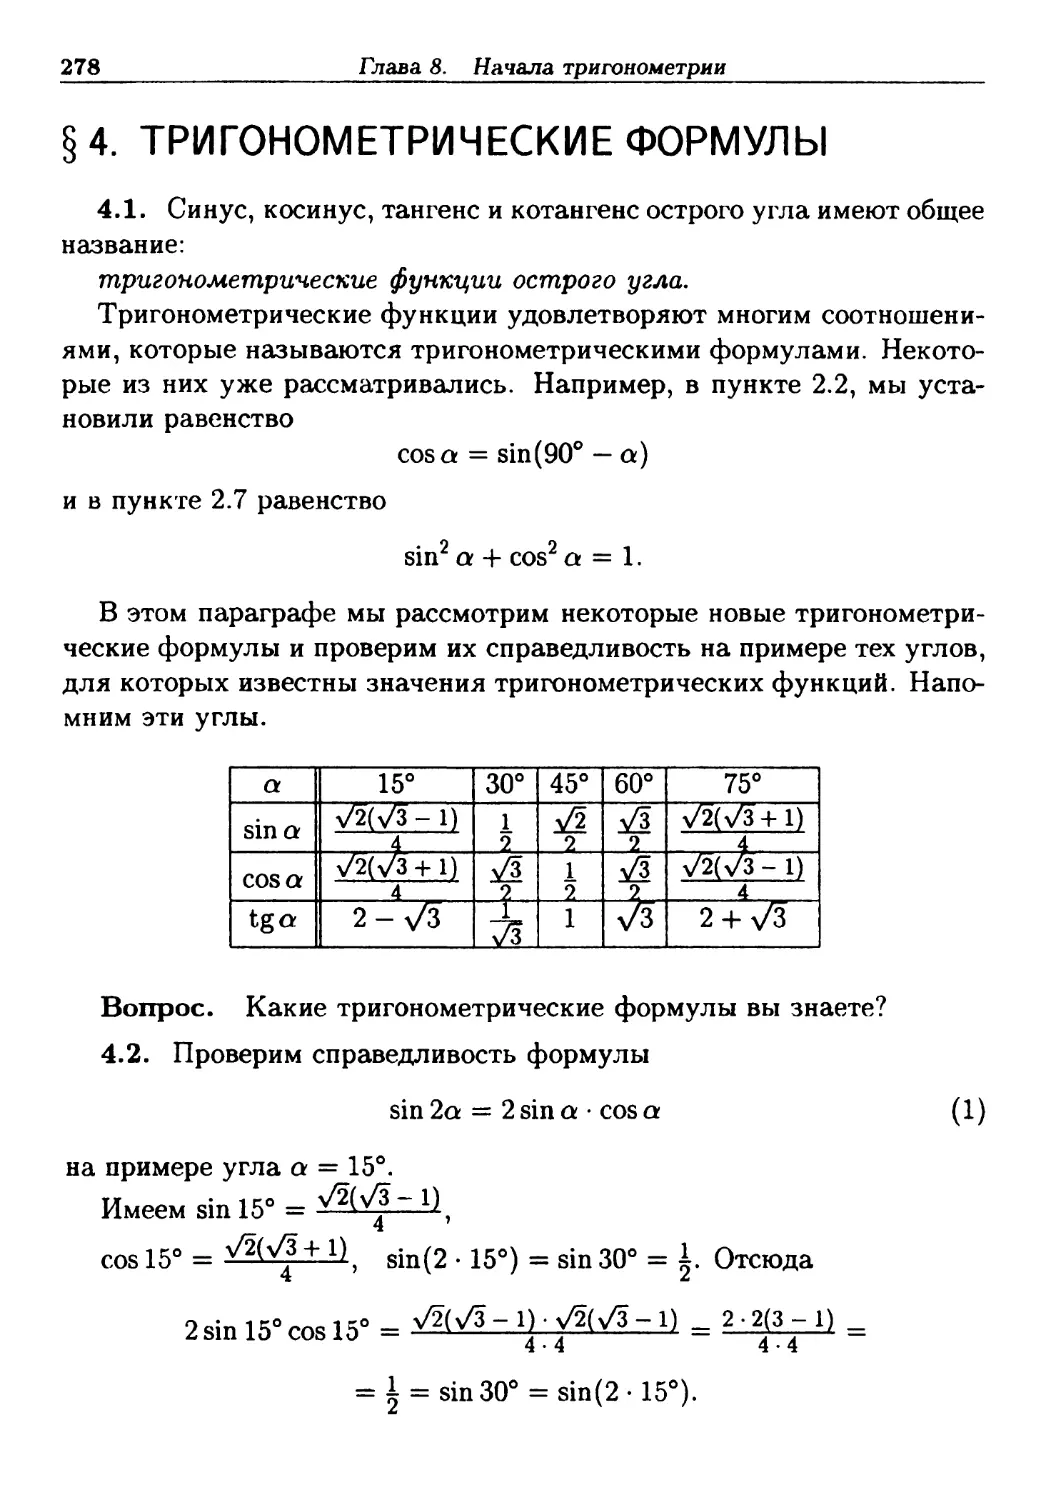 §4. Тригонометрические формулы